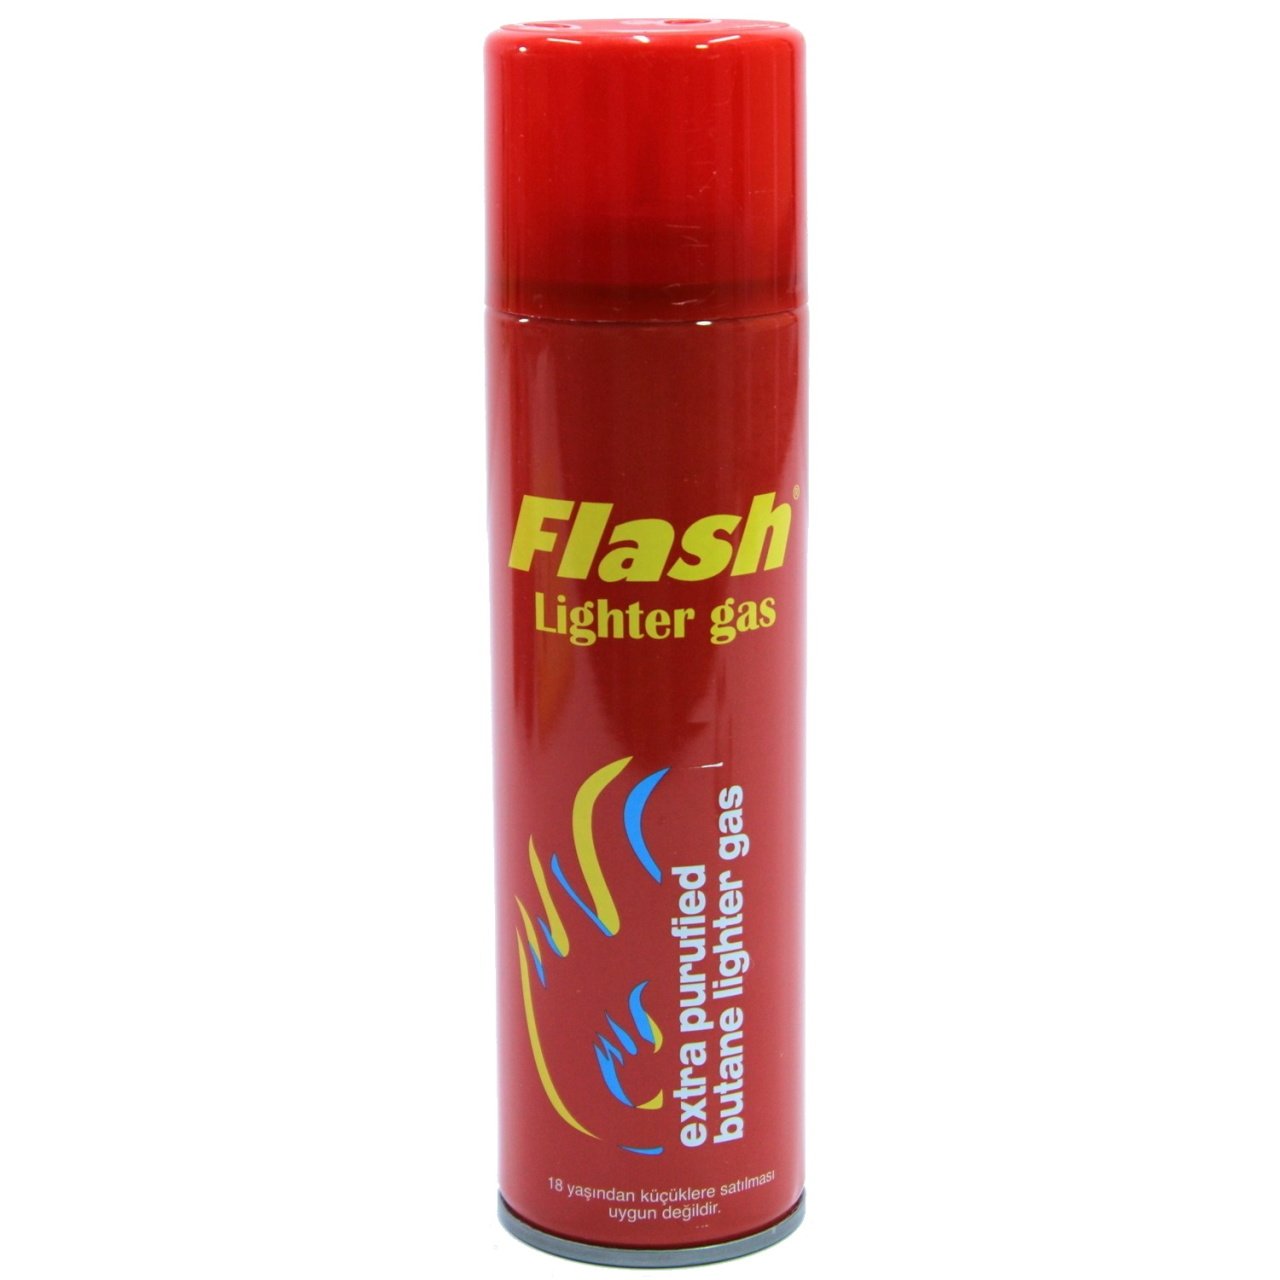 Flash Çakmak Gazı 270 ml - Kırmızı Şişe Çakmak Doldurma Gazı